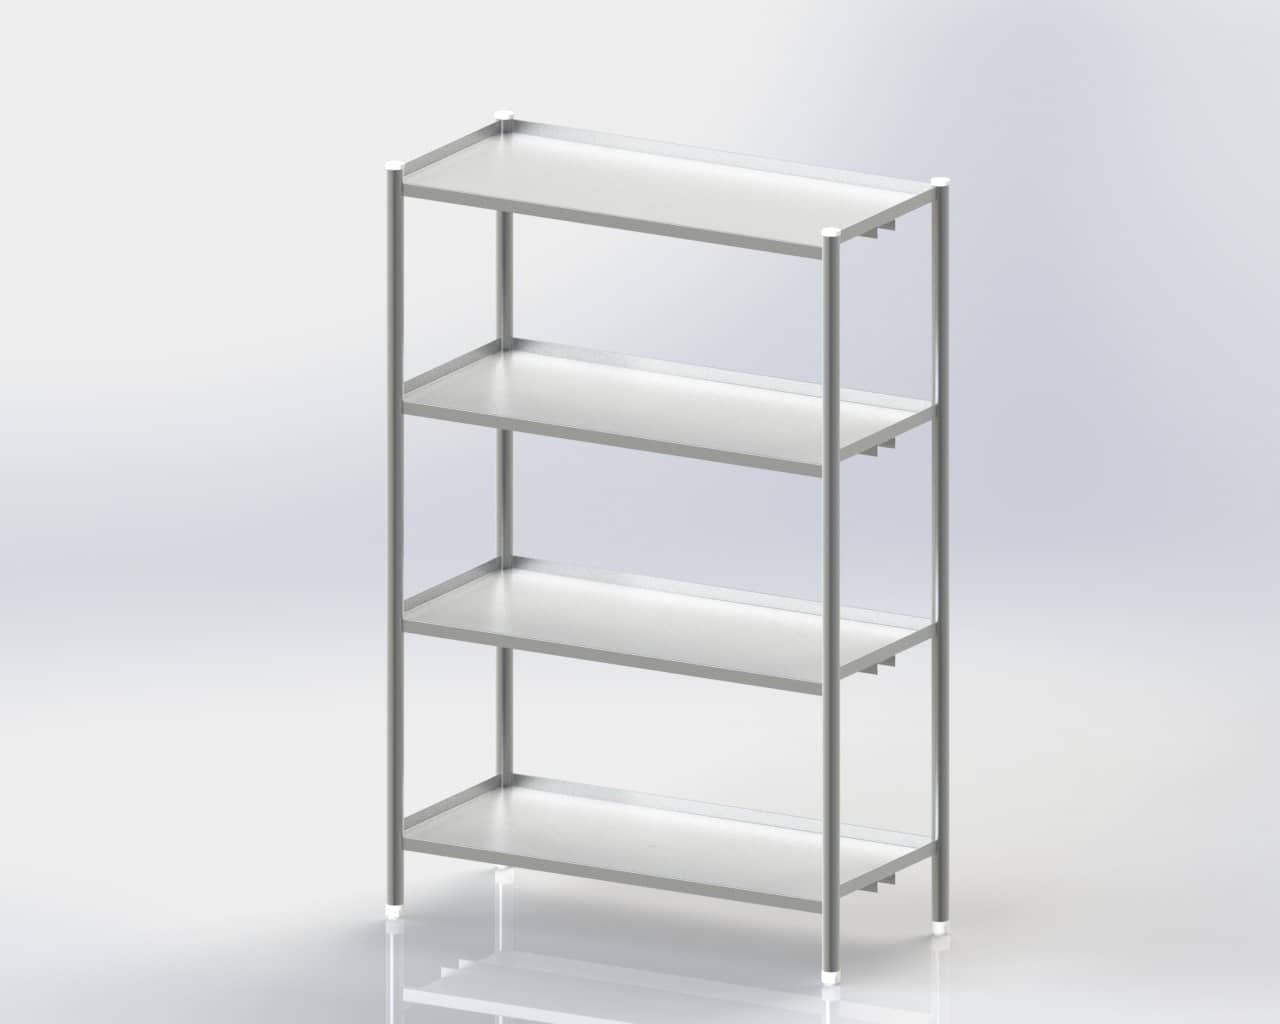 4 Storage Shelves / Standard / Mobile